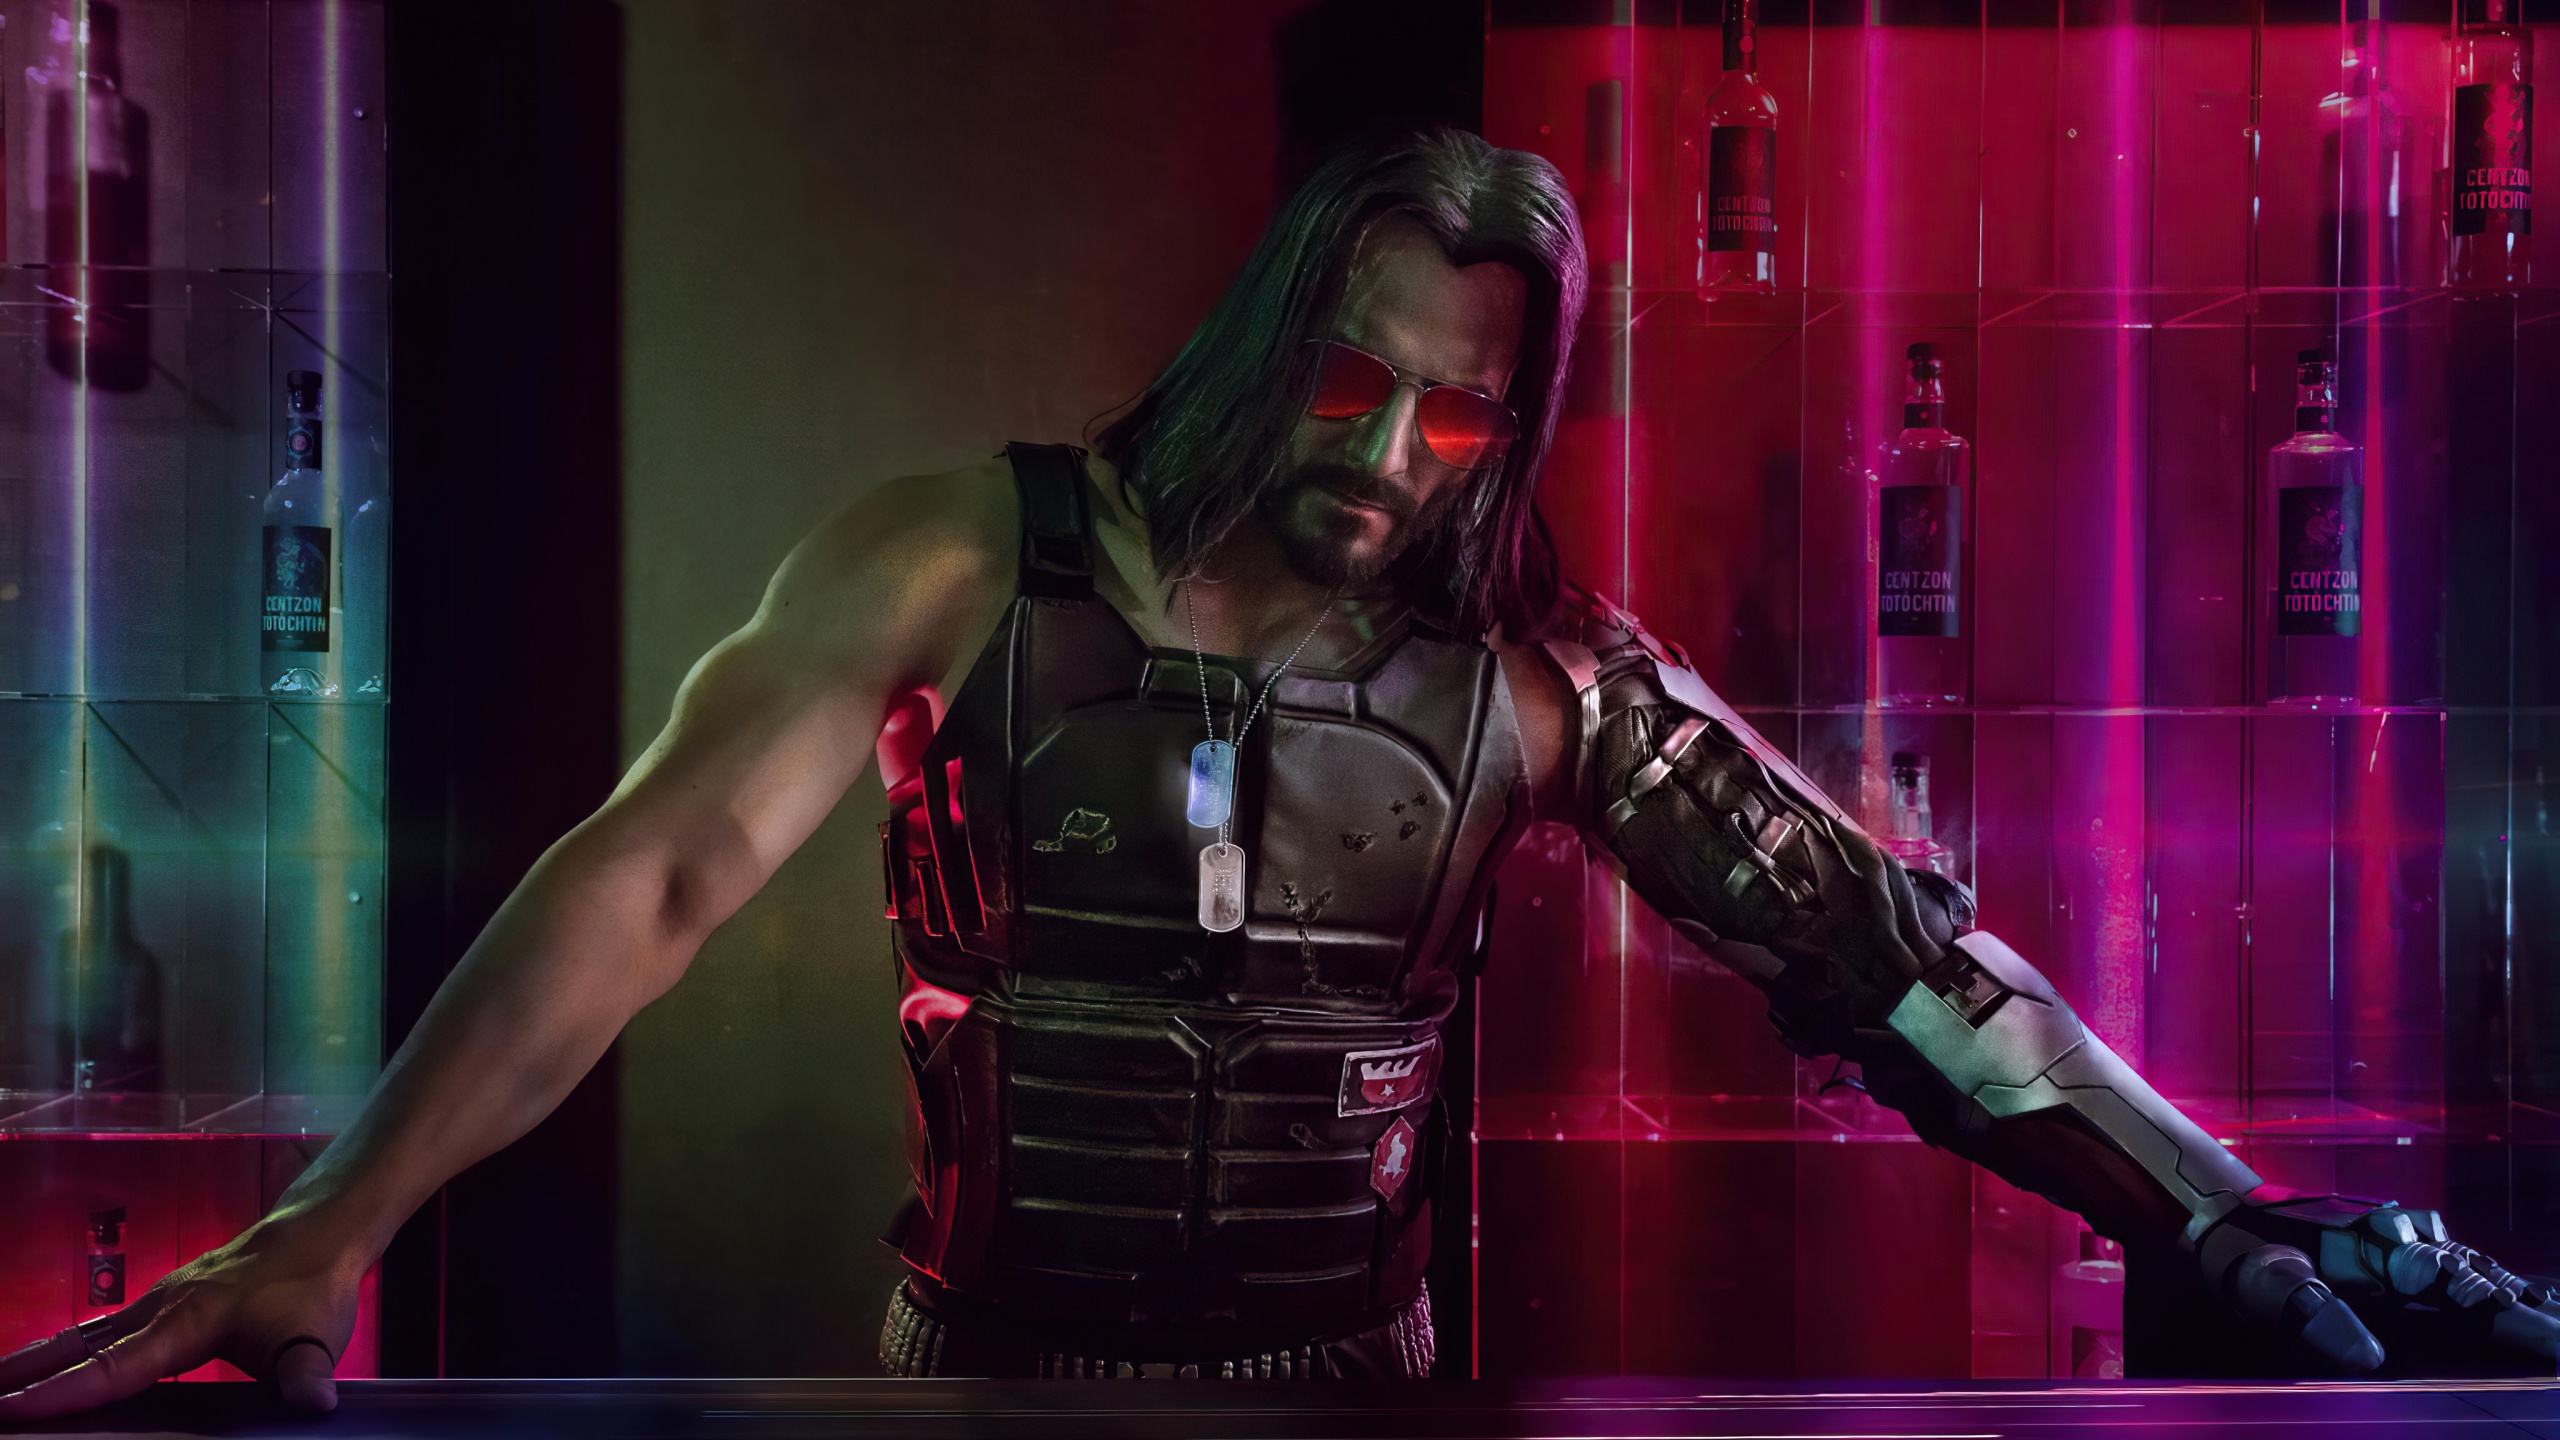 Johnny Silverhand Wallpaper 4K, Cyberpunk 2077, Keanu Reeves, 2020